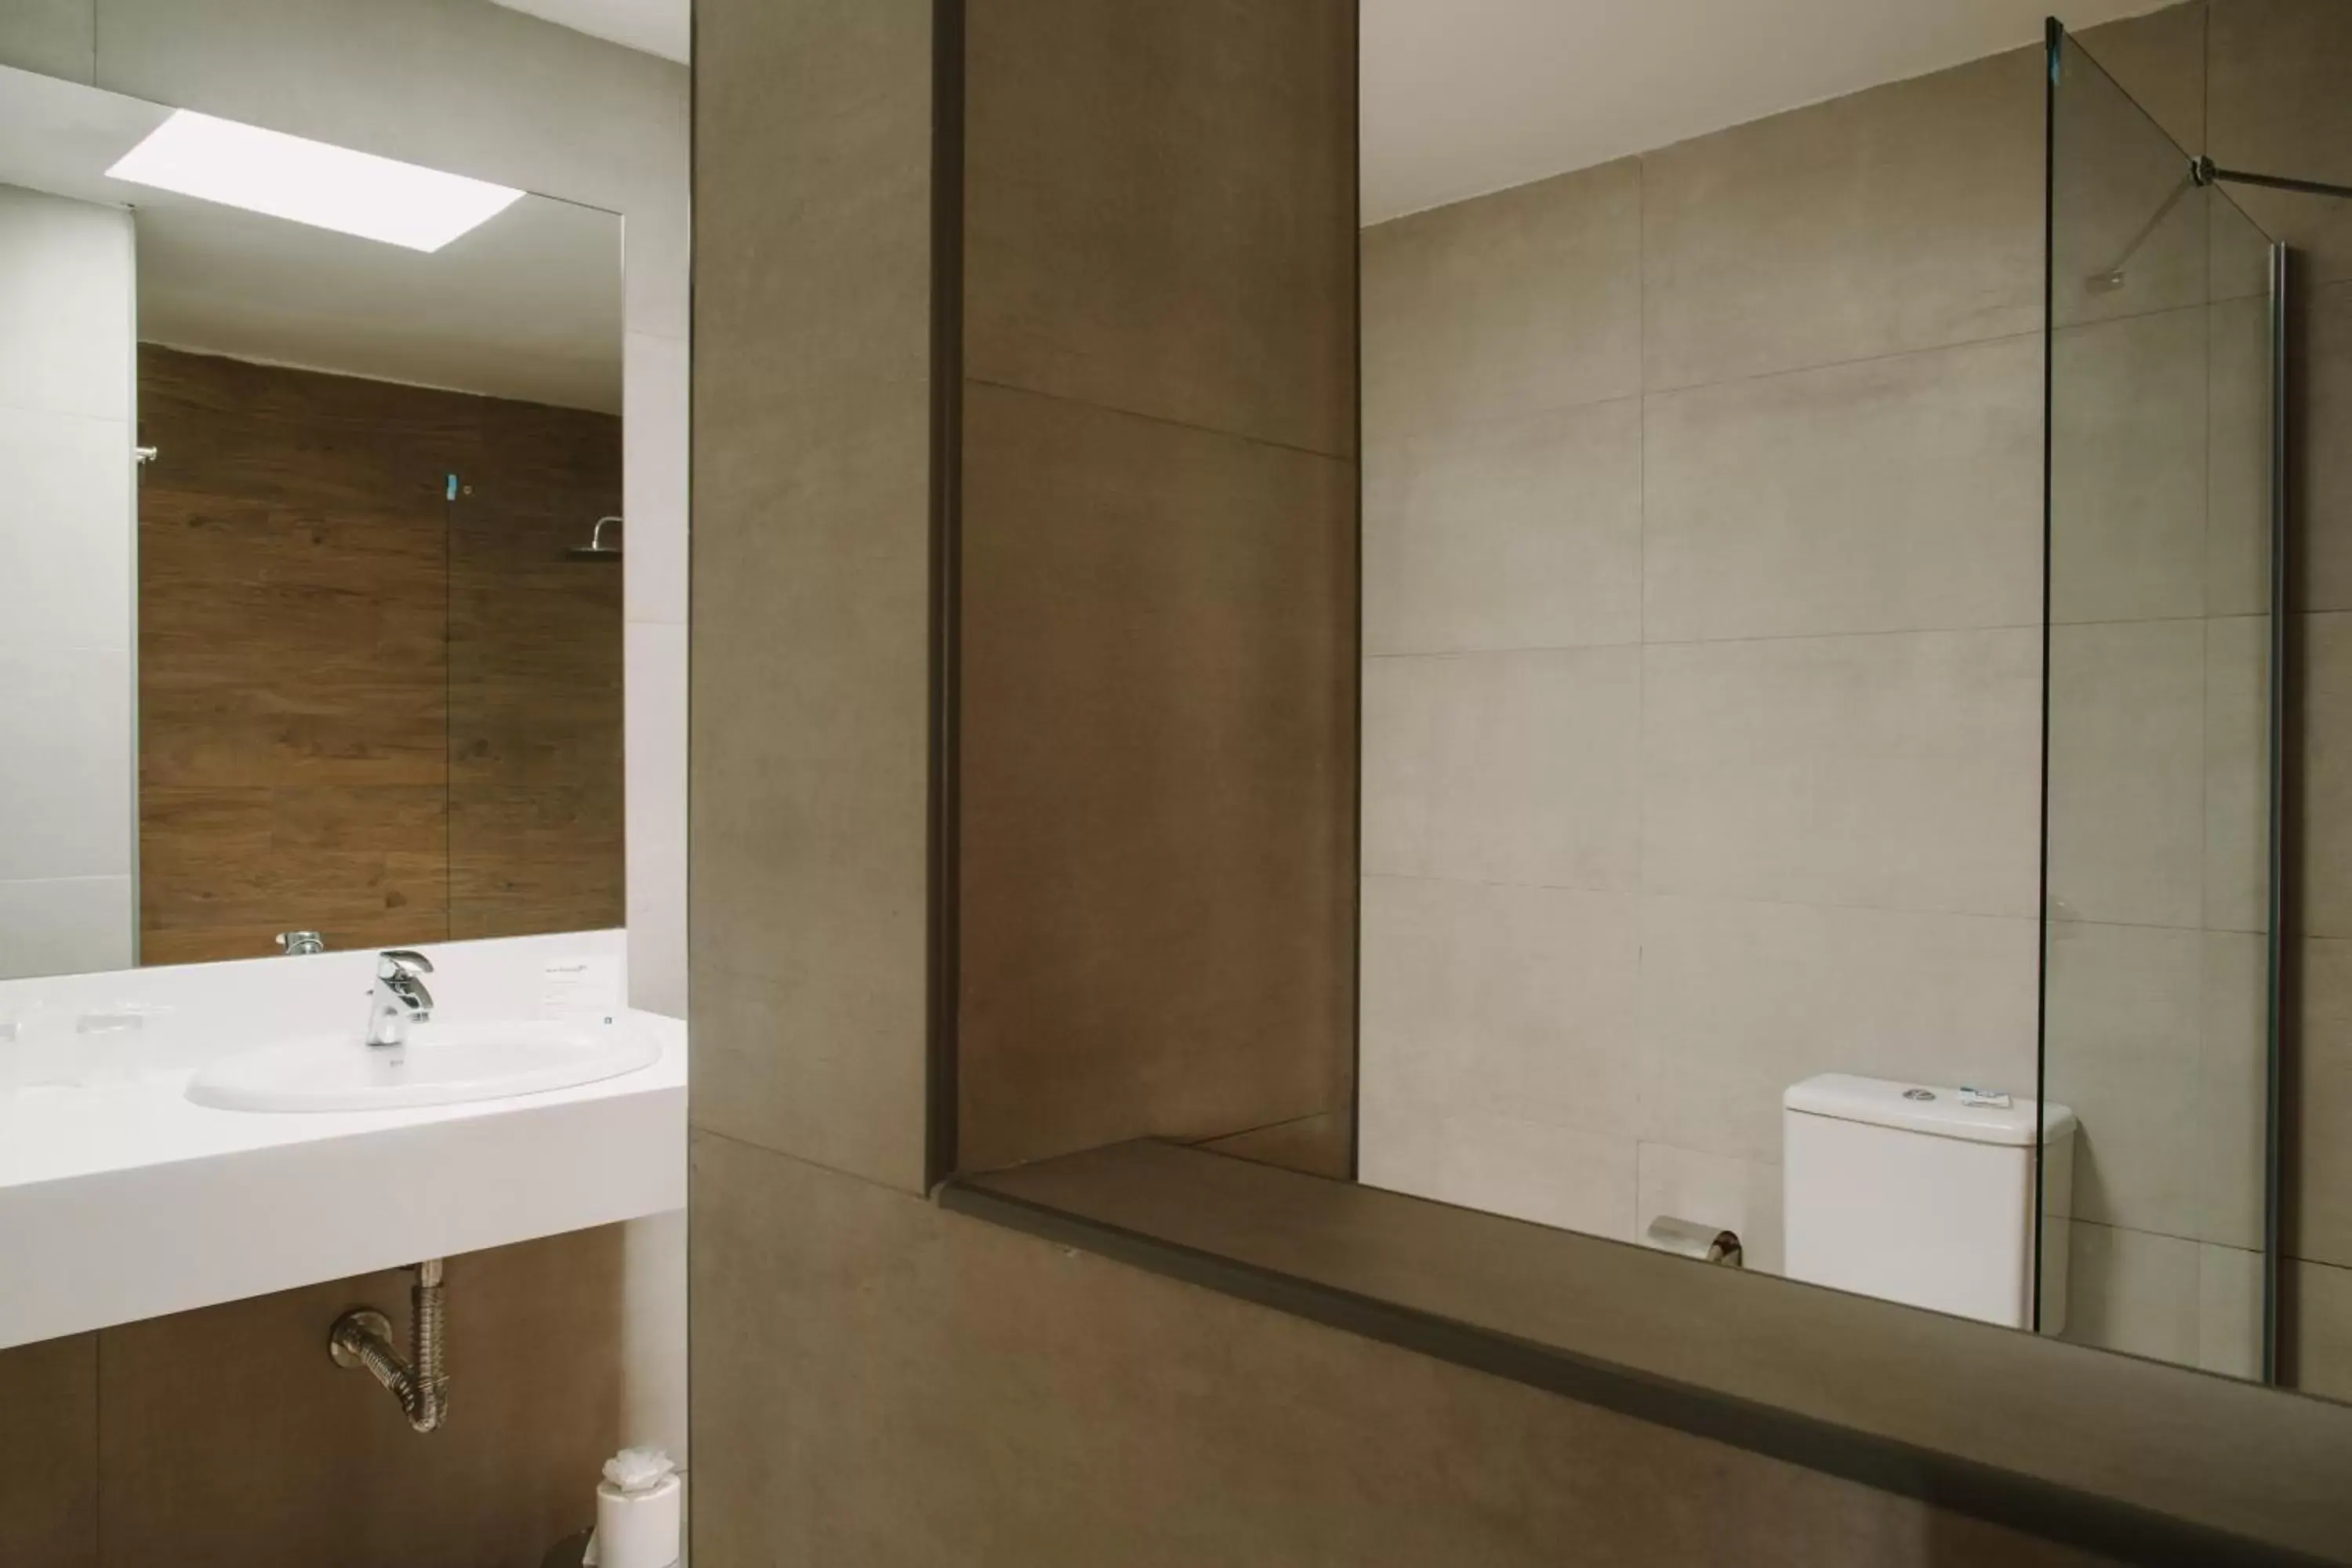 Toilet, Bathroom in Suites & Villas by Dunas